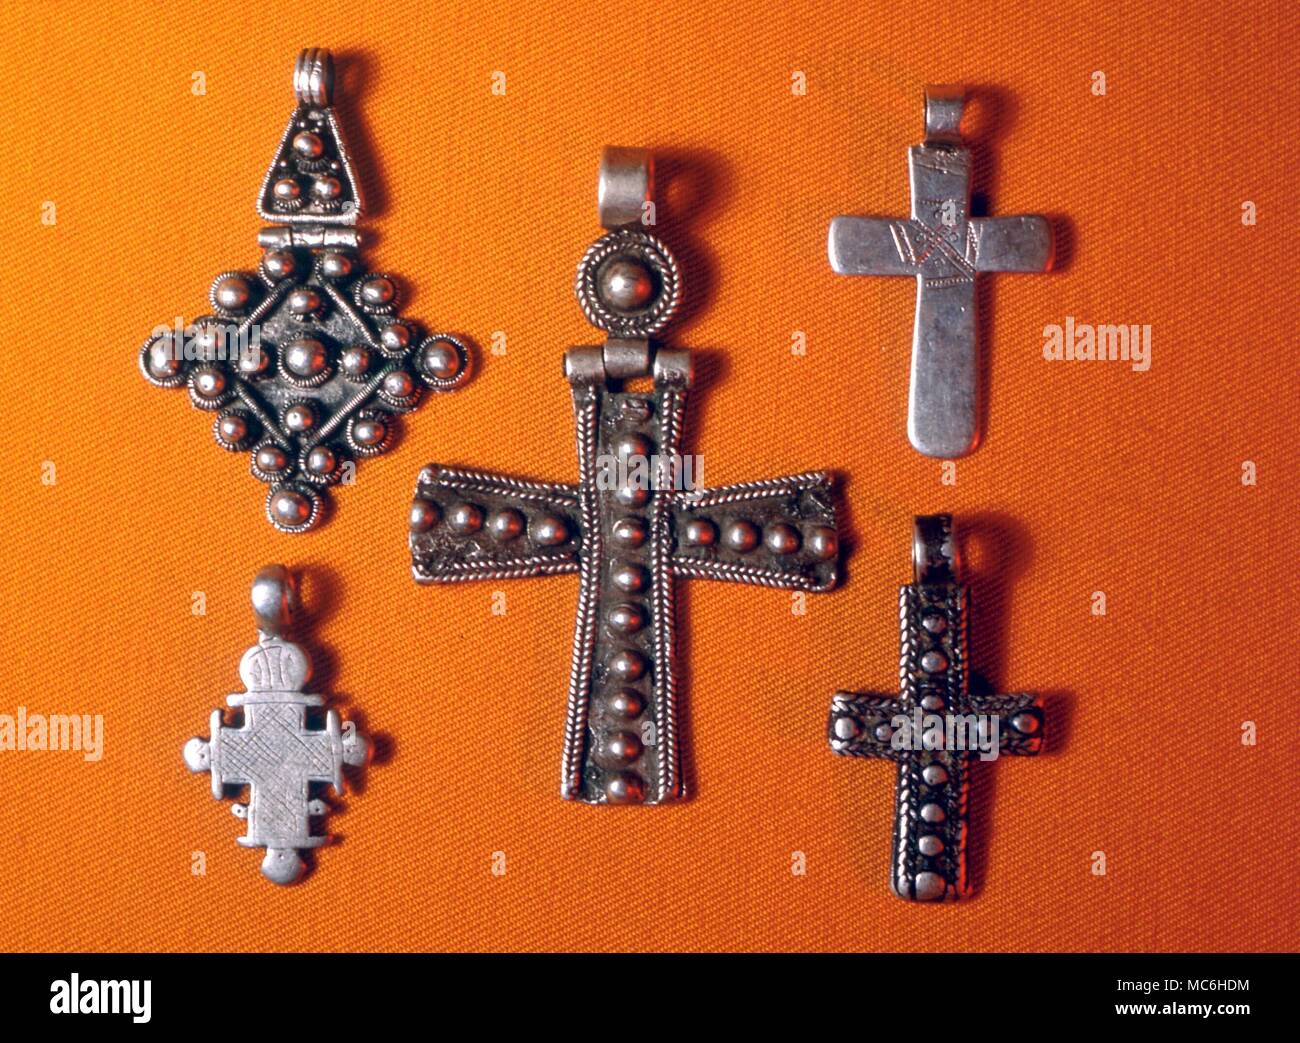 Amuleti - croce etiope. Tre croci pettorali dall Etiopia, in cui alcuni dei primi simboli cristiani sono ancora conservati. Collezione privata, Gordon Reece Foto Stock